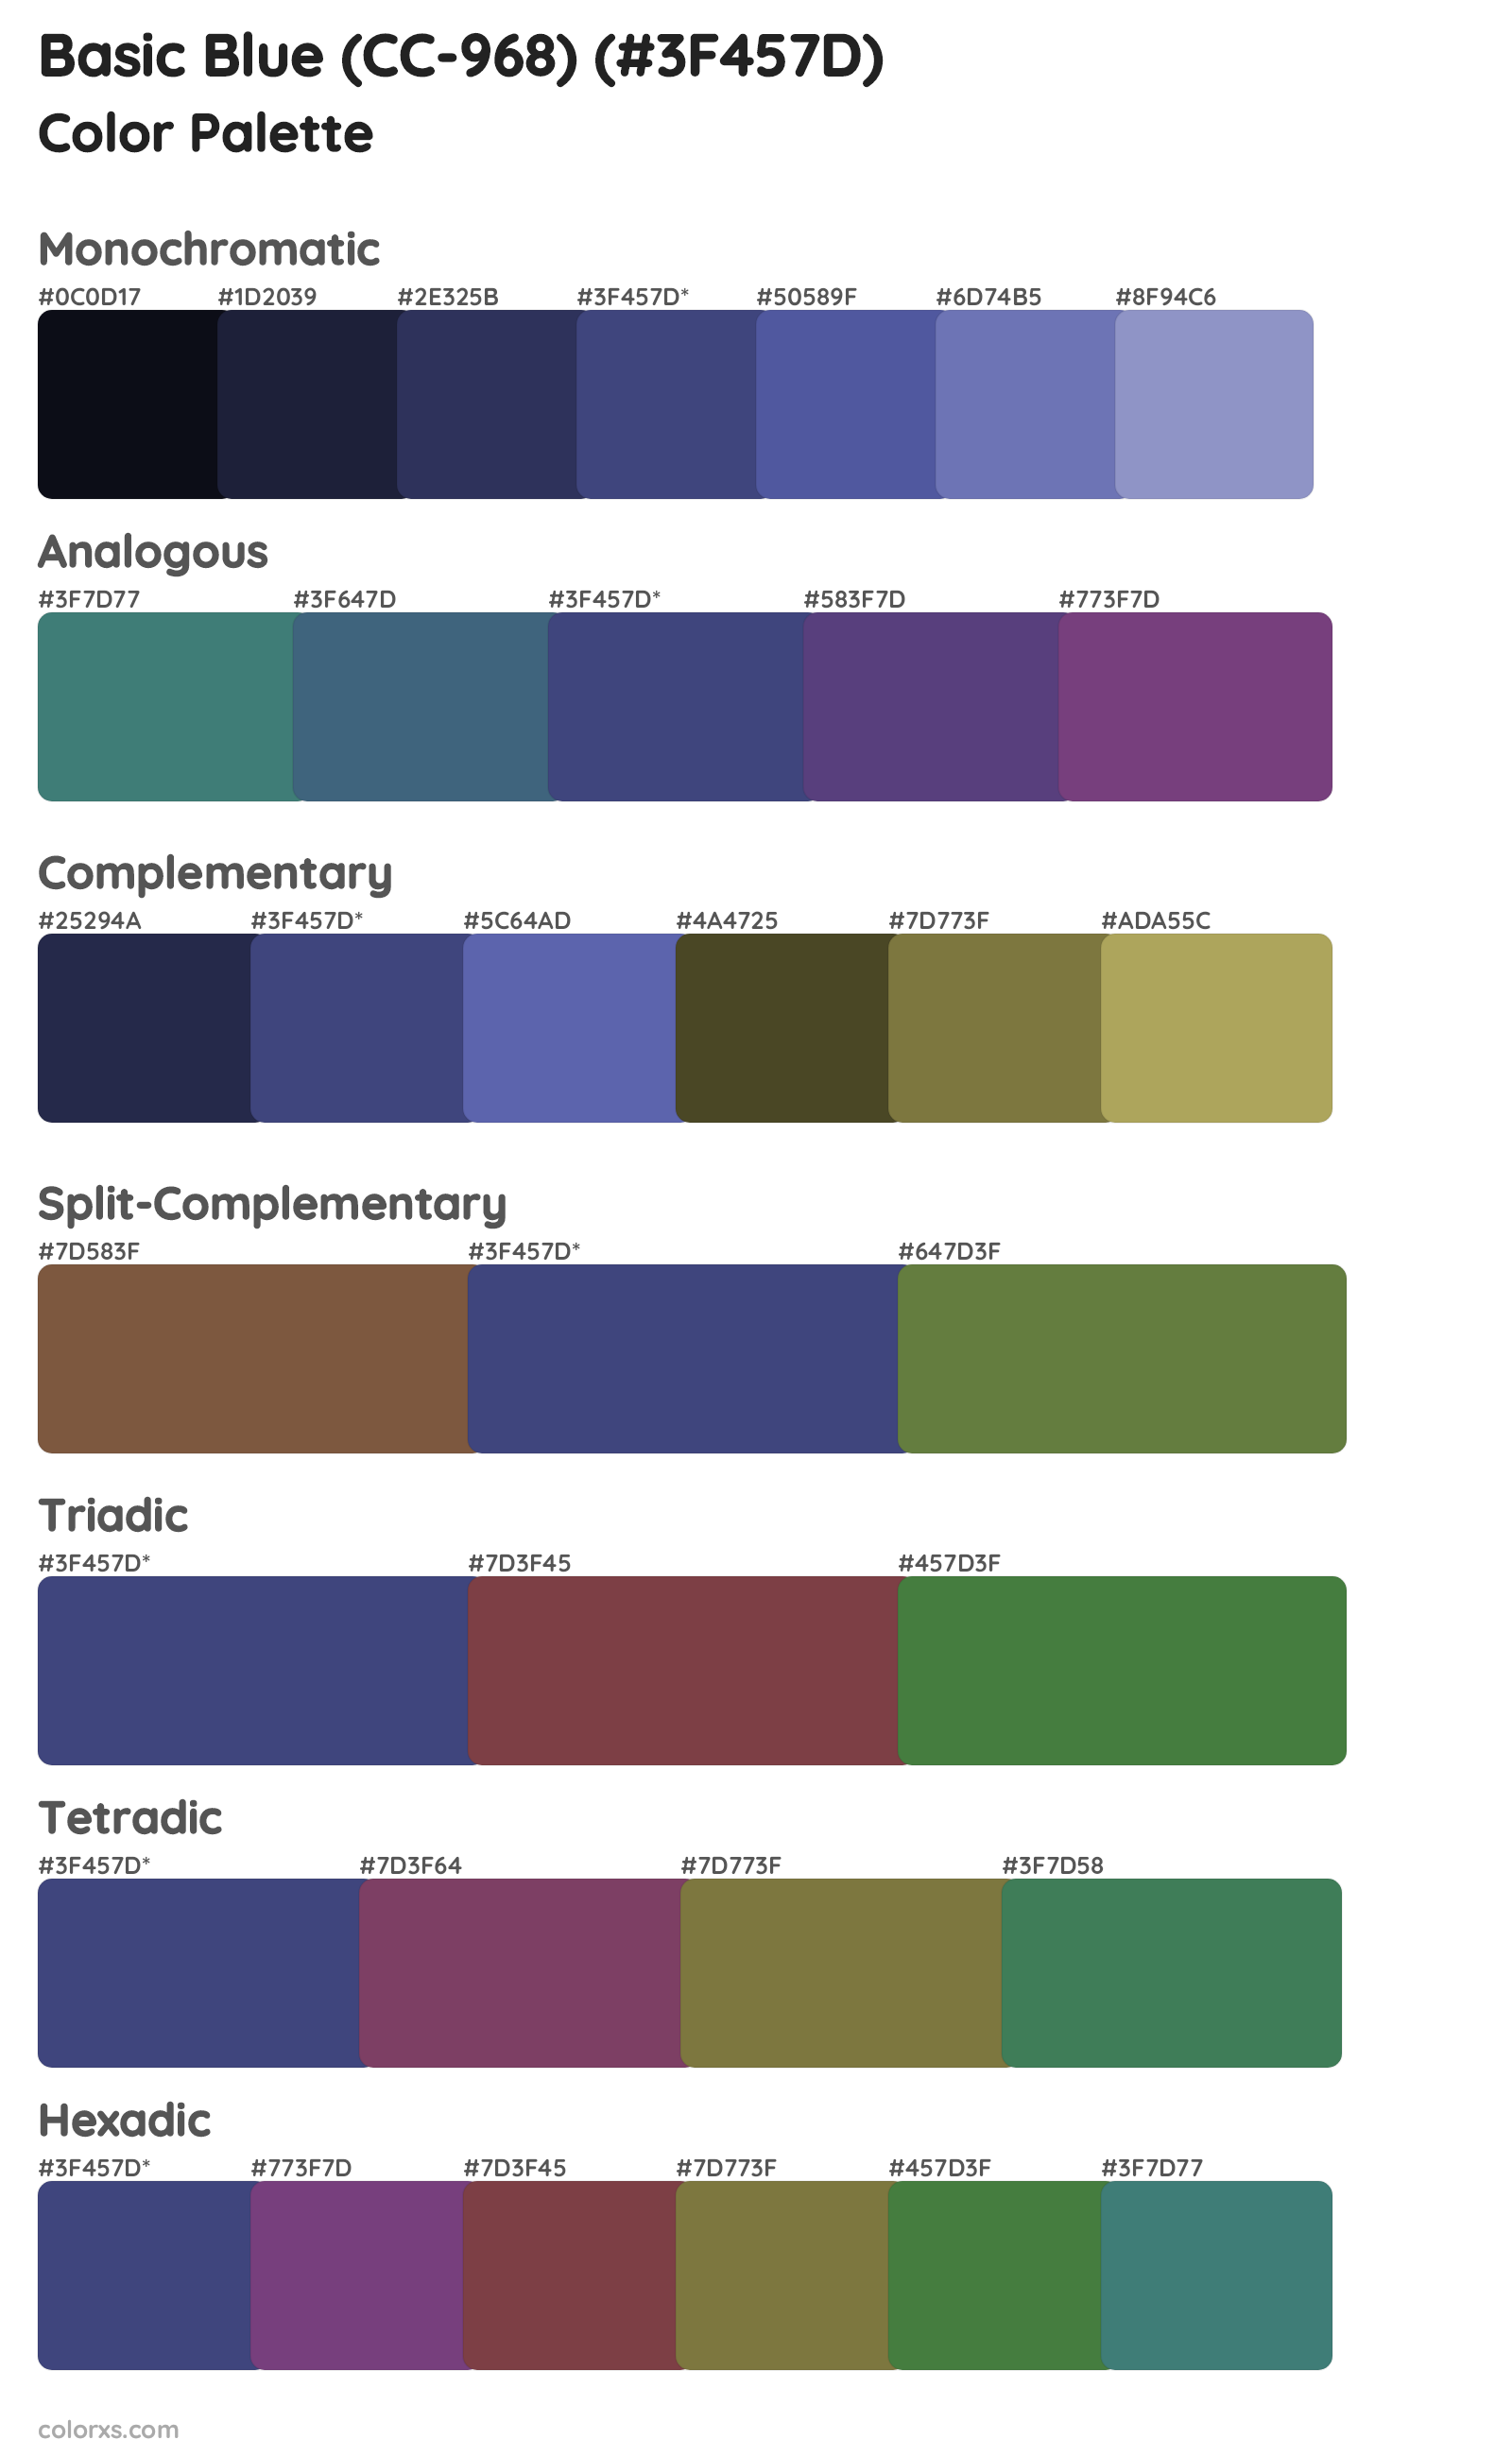 Basic Blue (CC-968) Color Scheme Palettes